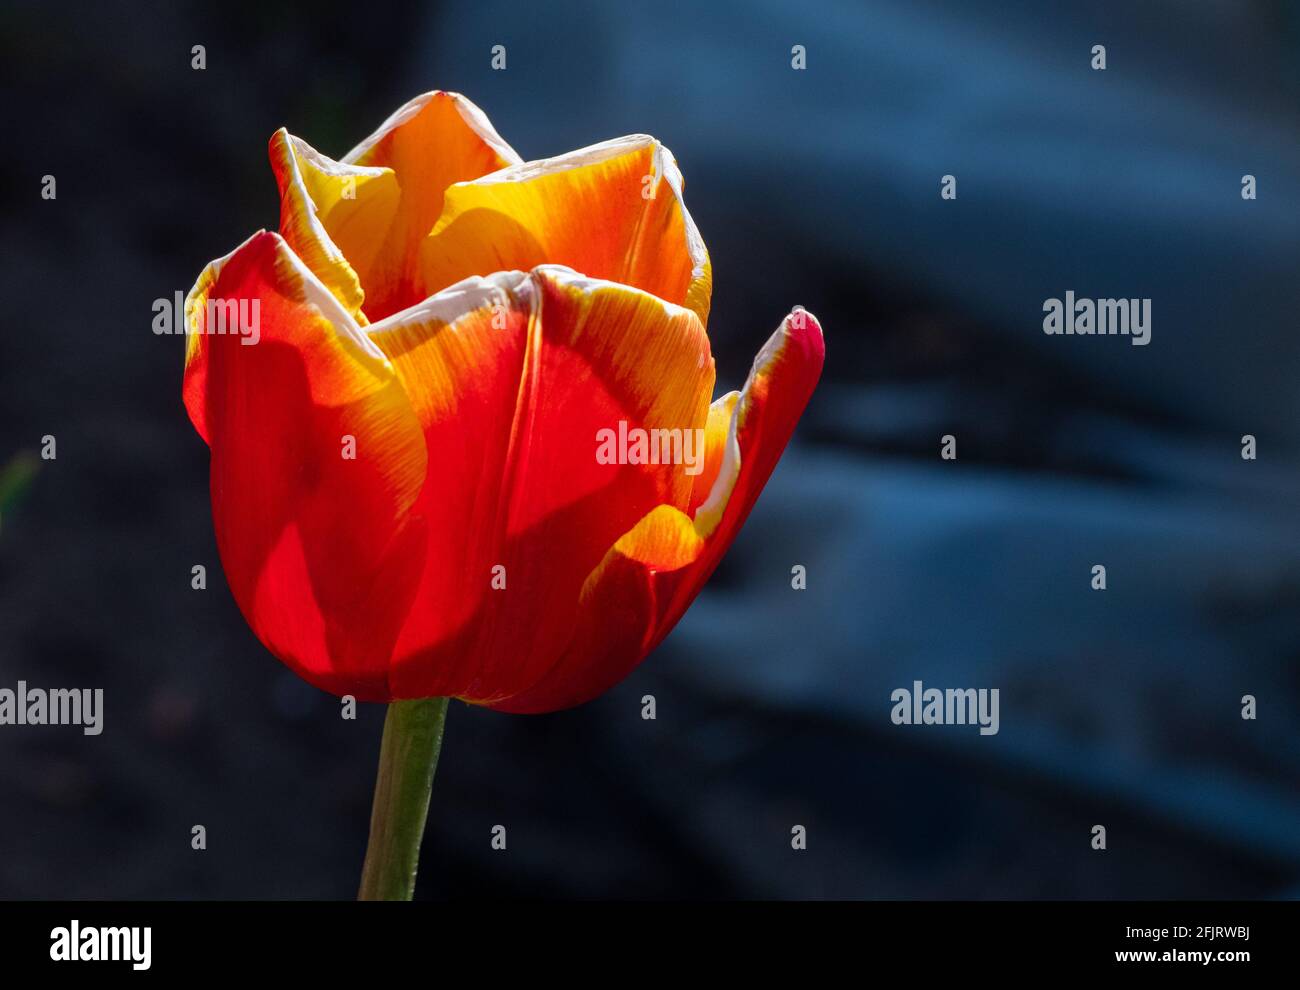 Makrobilder einer Tulpe im englischen Frühling, rote Blütenblätter mit gelben Spitzen, enge Schärfentiefe. Stockfoto